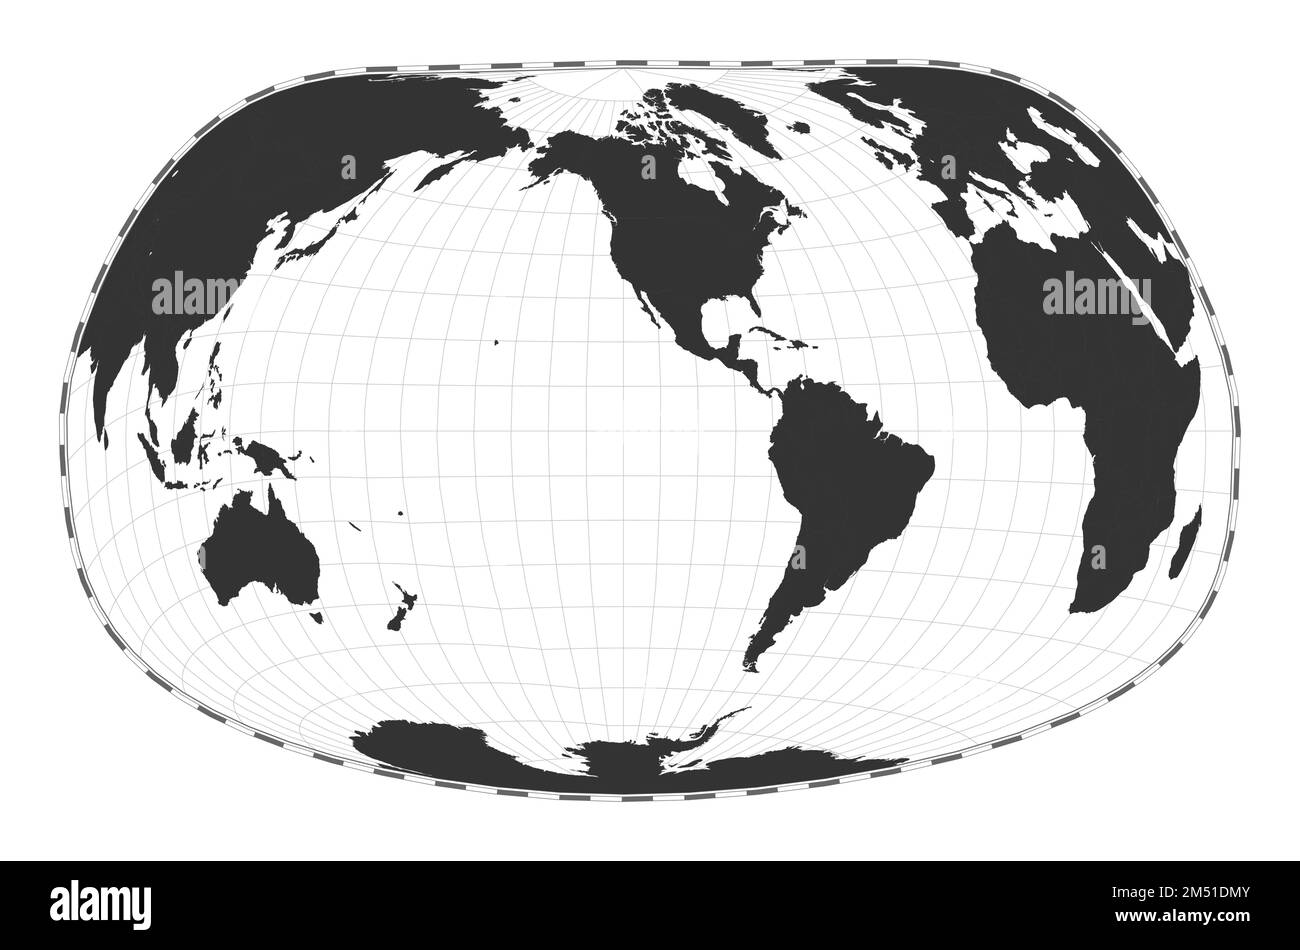 Vector-Weltkarte. Jacques Bertins Projektion 1953. Geografische Karte mit Breiten- und Längengraden. Zentriert auf 120deg E-Längengrad. Ve Stock Vektor